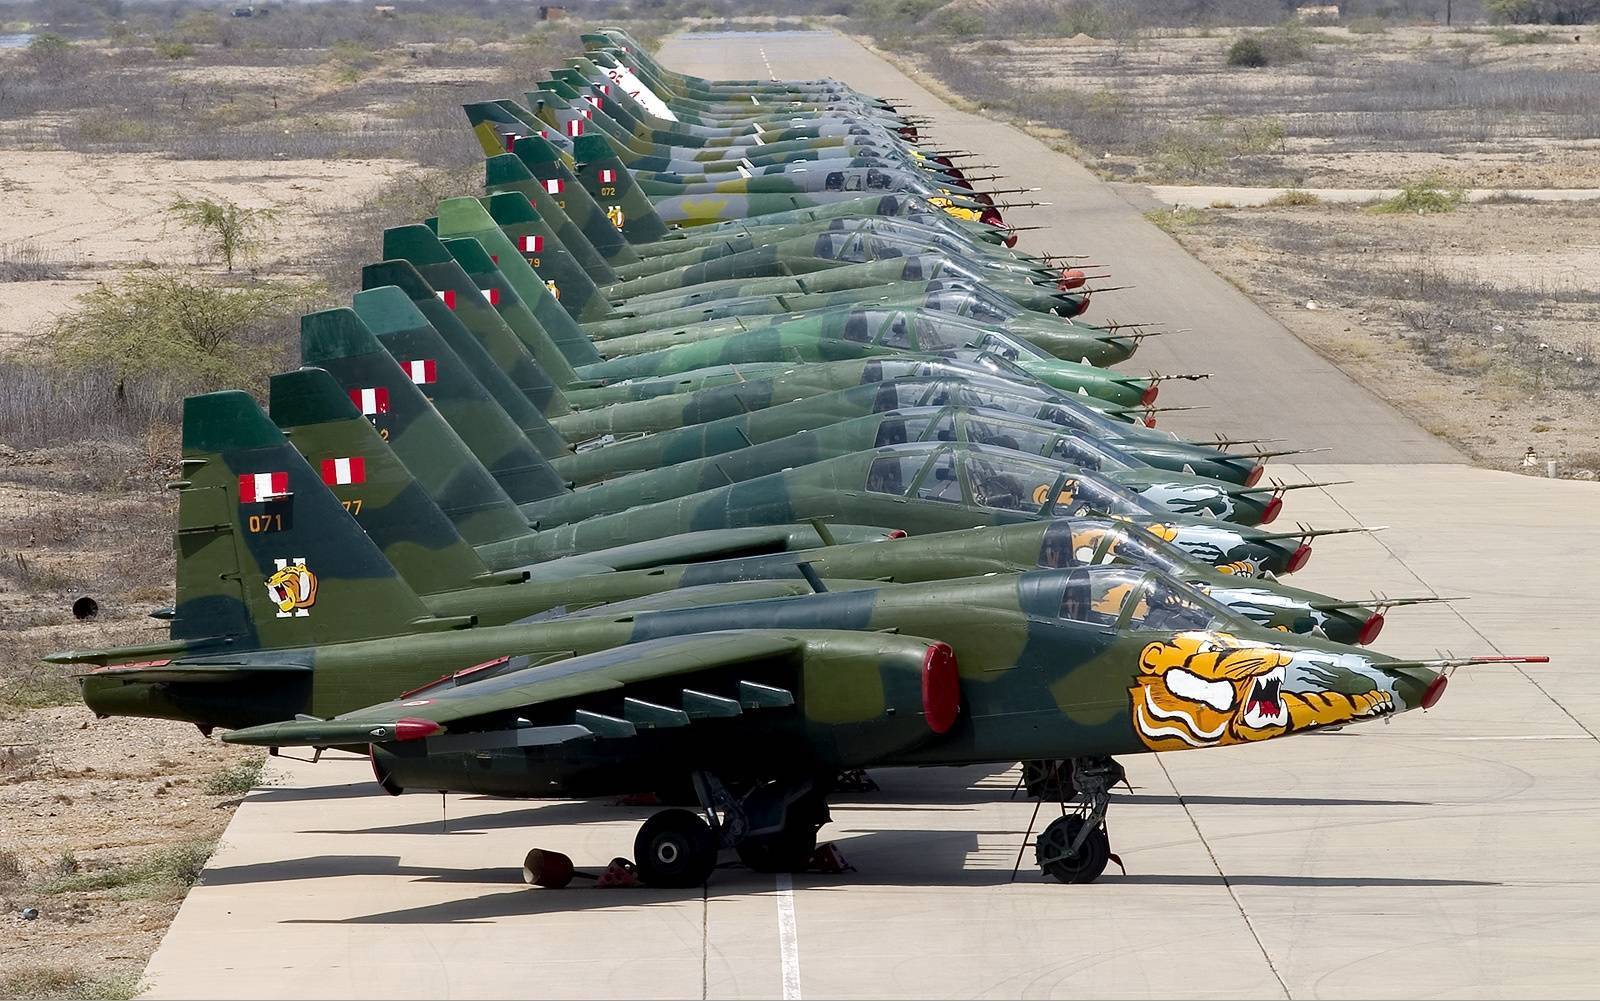 Су-39 – неуязвимый многофункциональный штурмовик